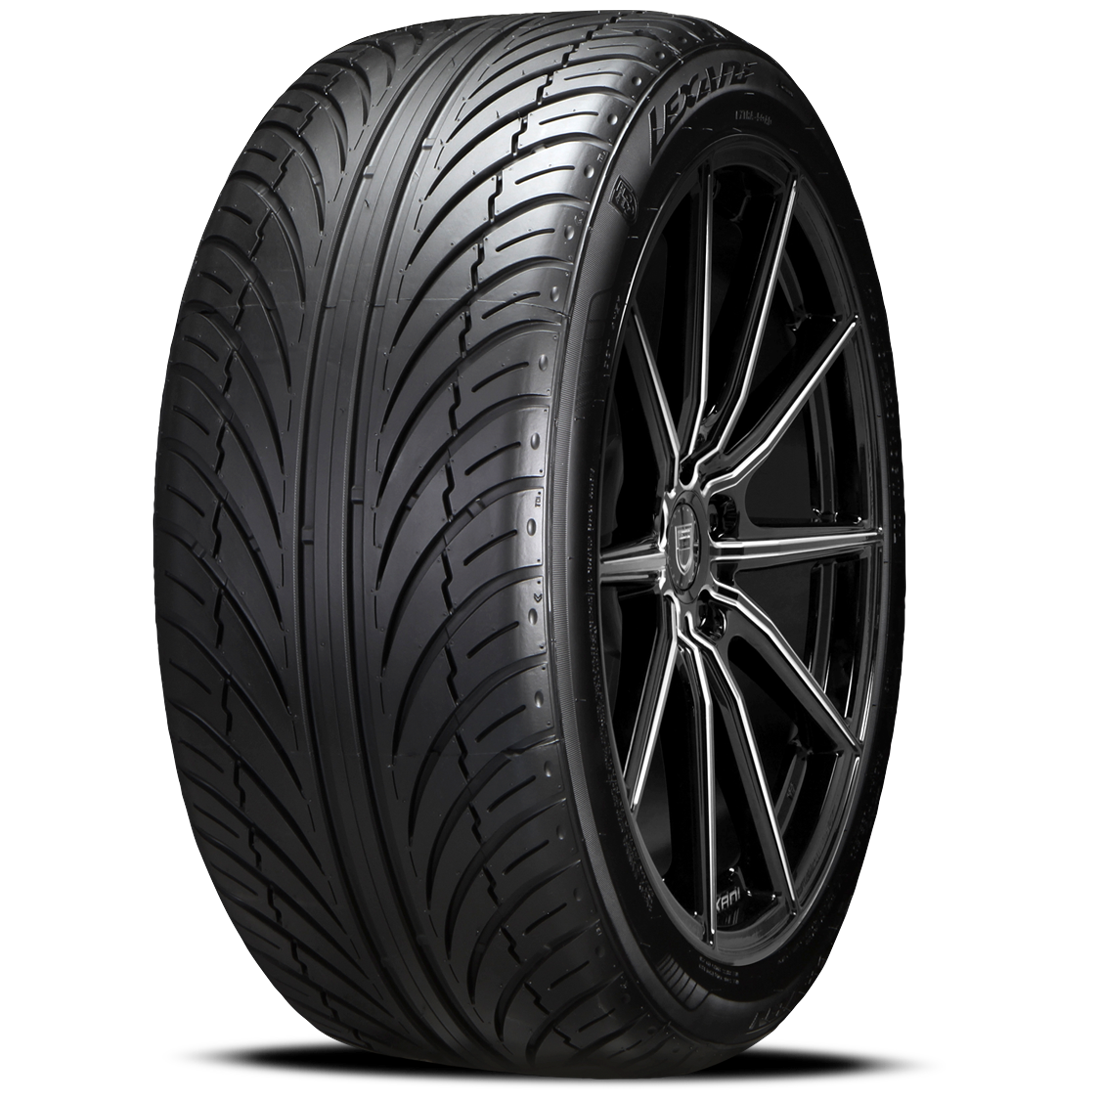 LEXANI LX-SEVEN 225/35ZR20 (26.2X9.1R 20) Tires